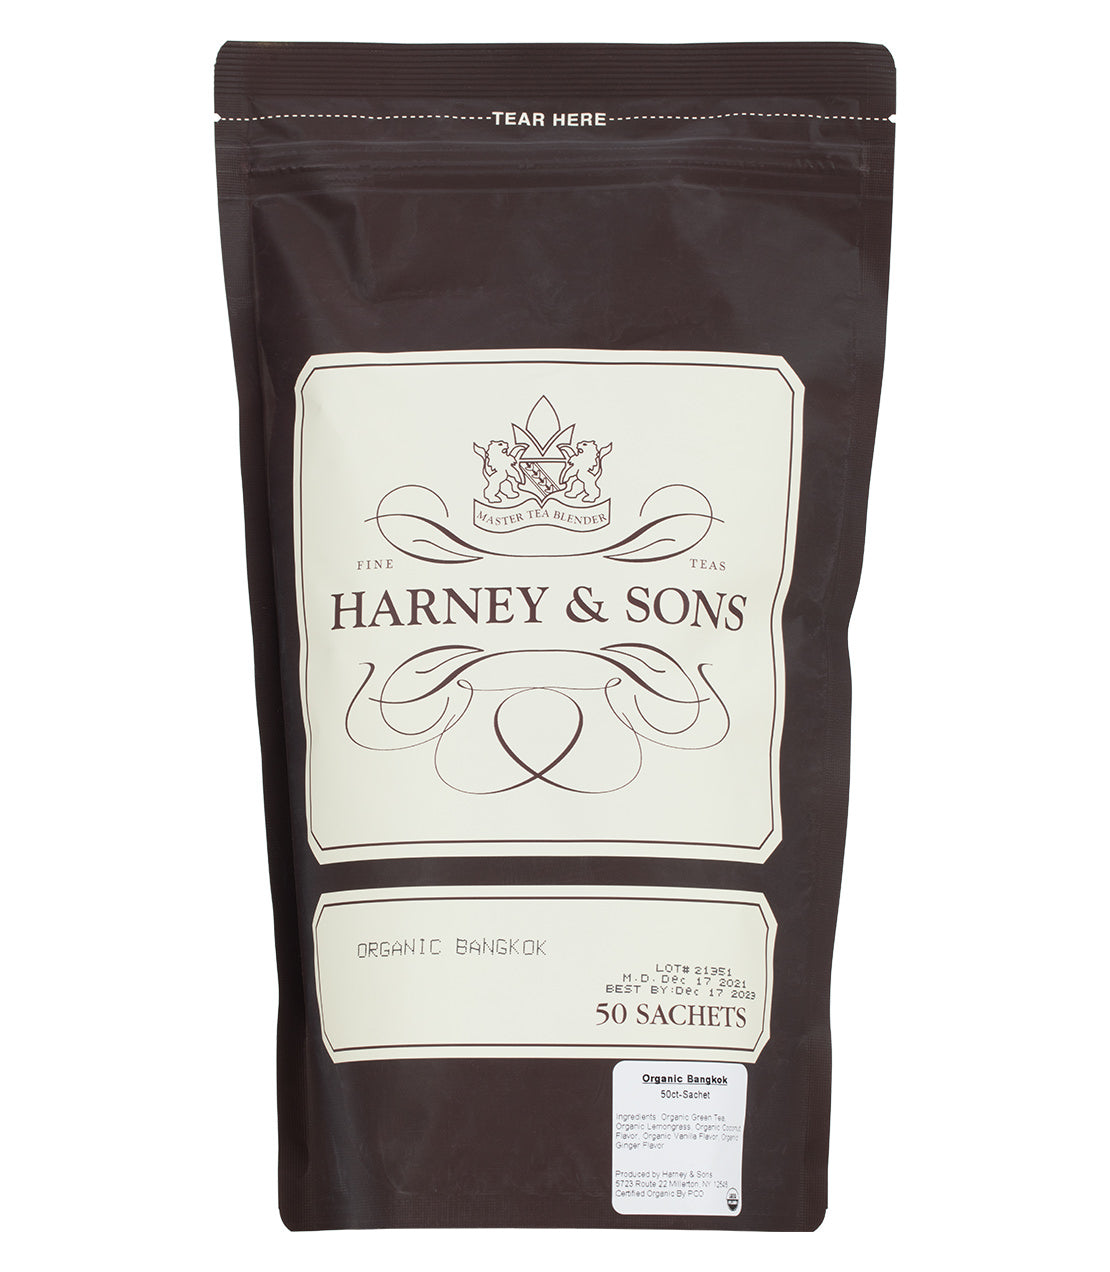 Organic Bangkok, Bag of 50 Sachets - Sachets Bag of 50 Sachets - Harney & Sons Fine Teas